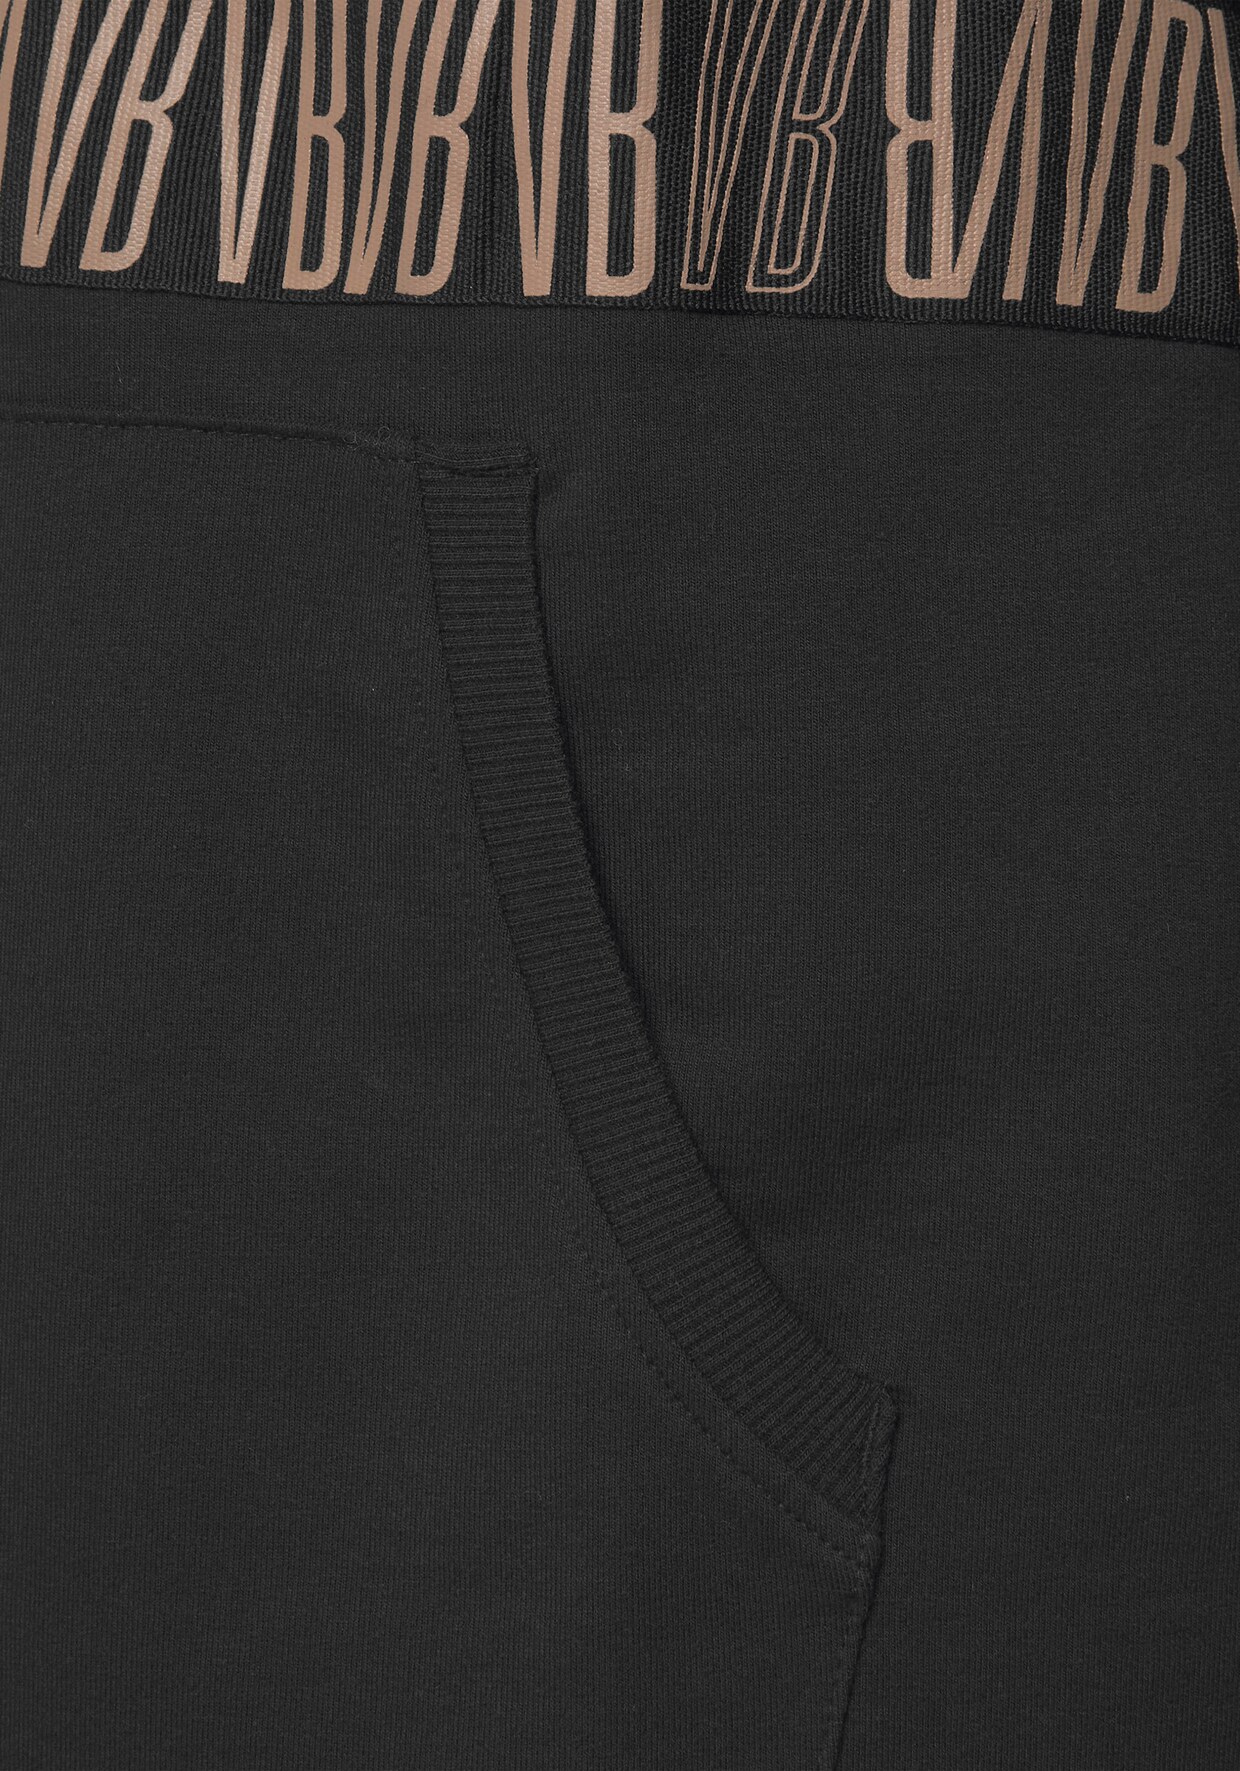 Venice Beach Sweatshirt à capuche - noir